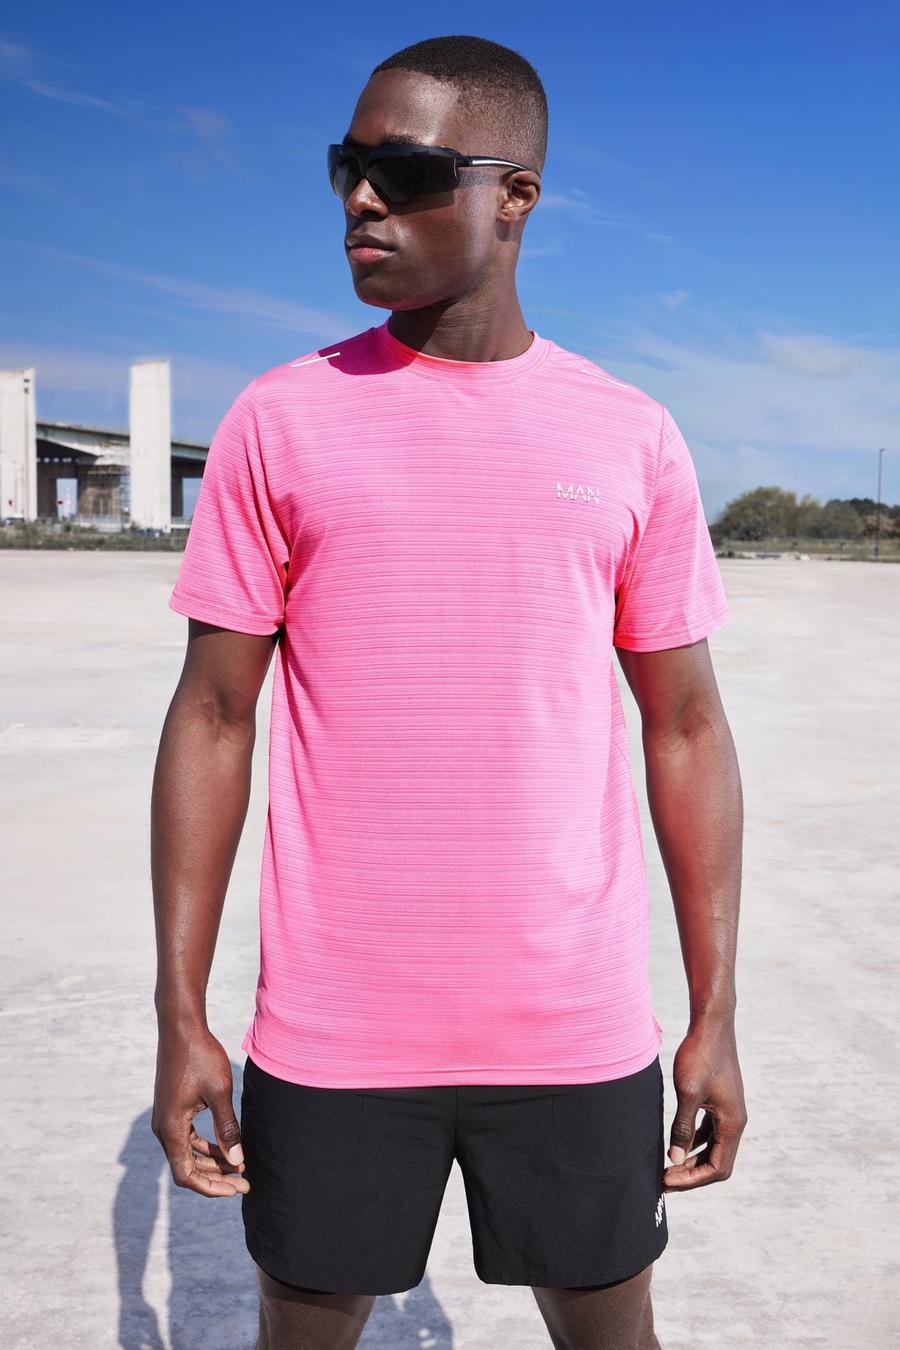 Neon-pink Man Active Lightweight Performance T-shirt   